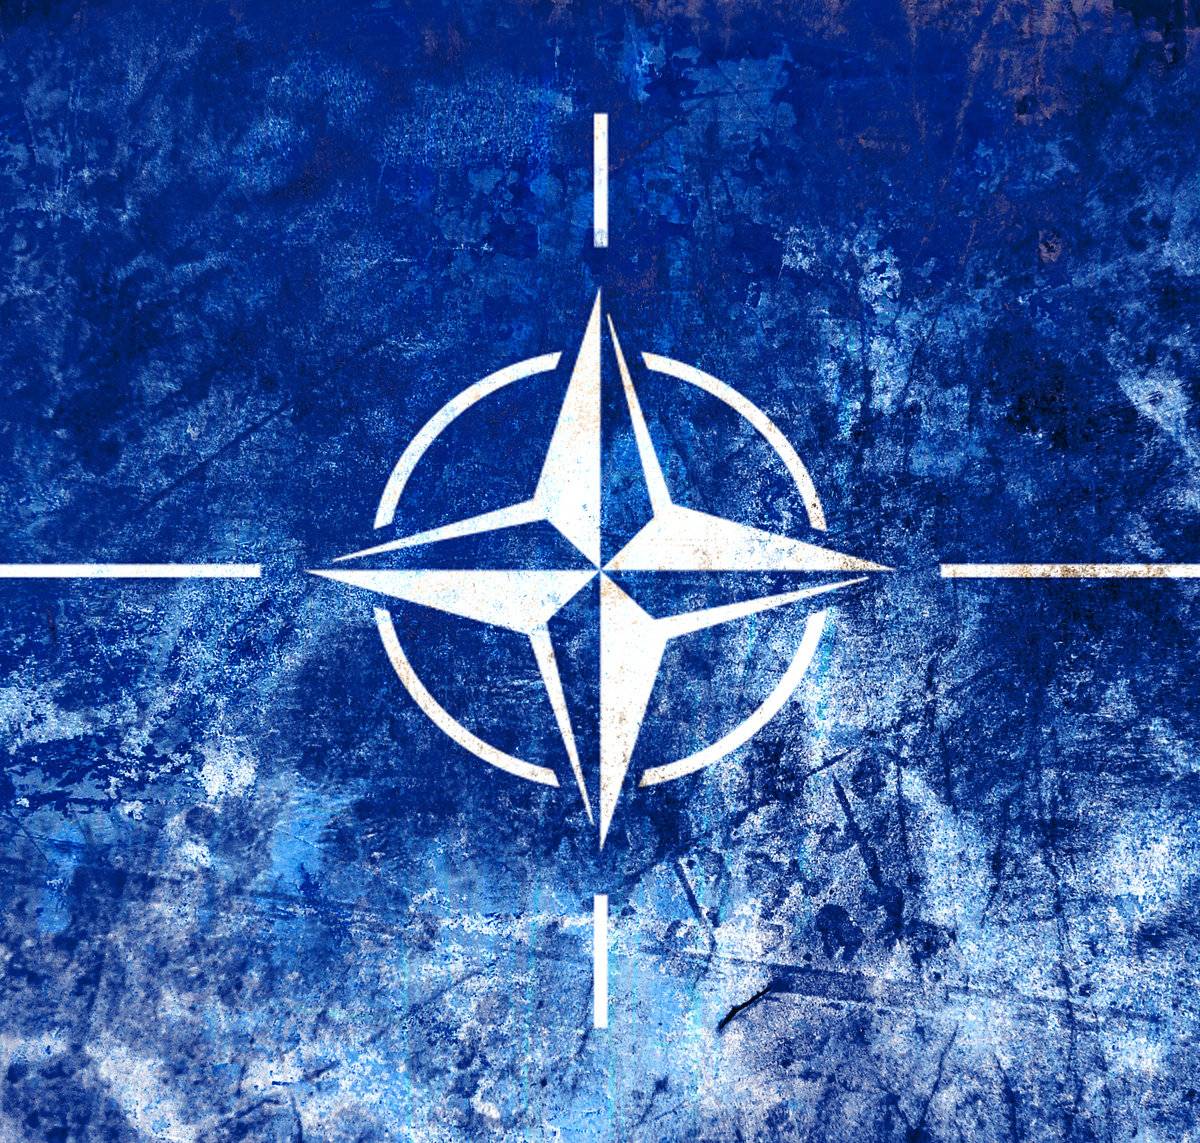 Антироссийская зачистка информационного поля на Балканах со стороны НАТО